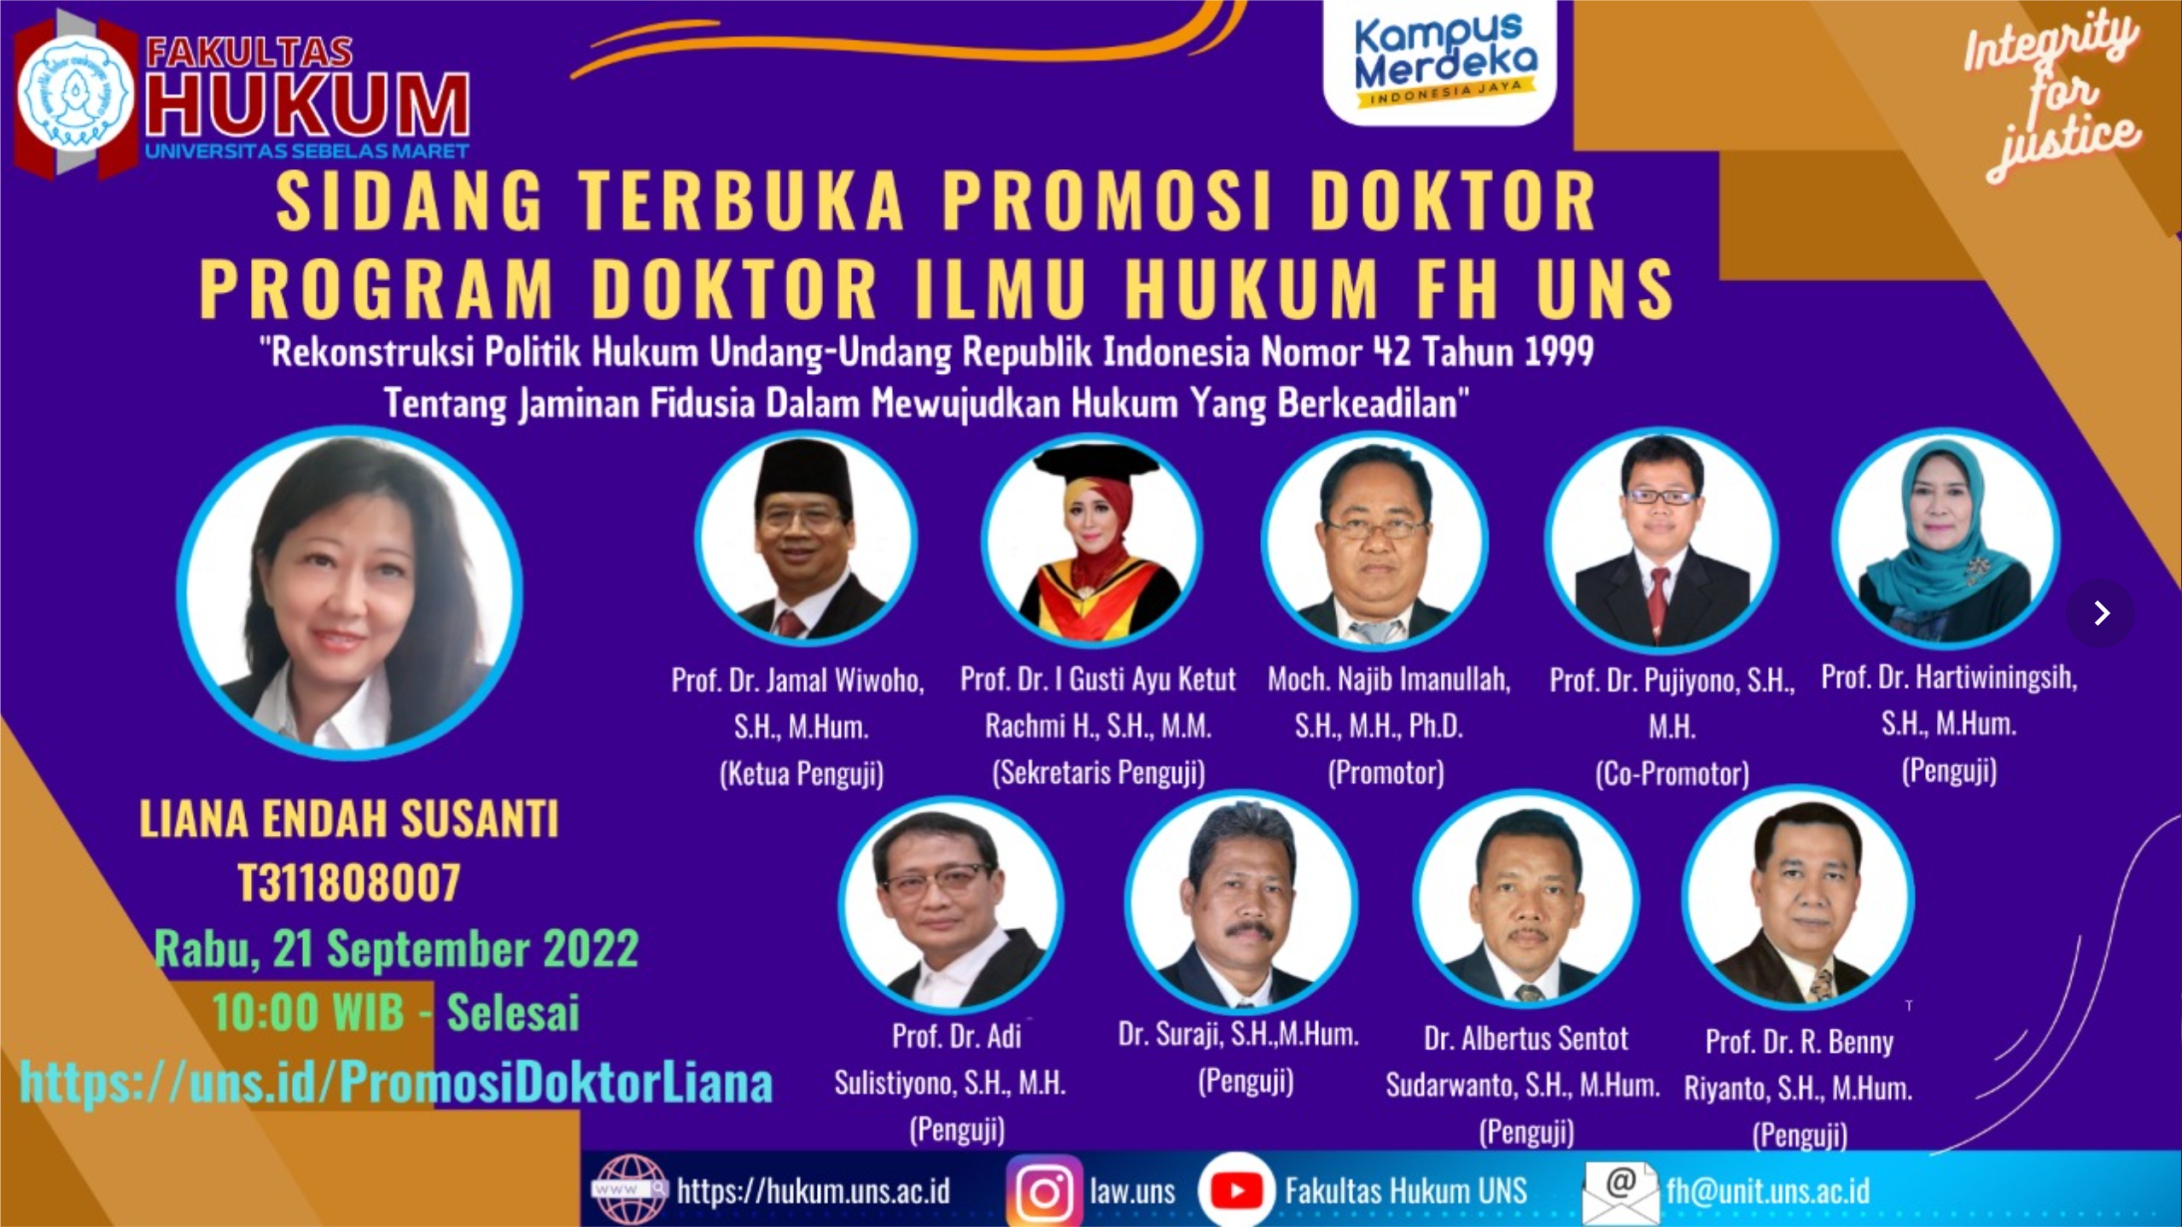 Promosi Doktor Program Doktor Ilmu Hukum FH UNS Dr. Ir. Liana Endah Susanti, SH,M.KN